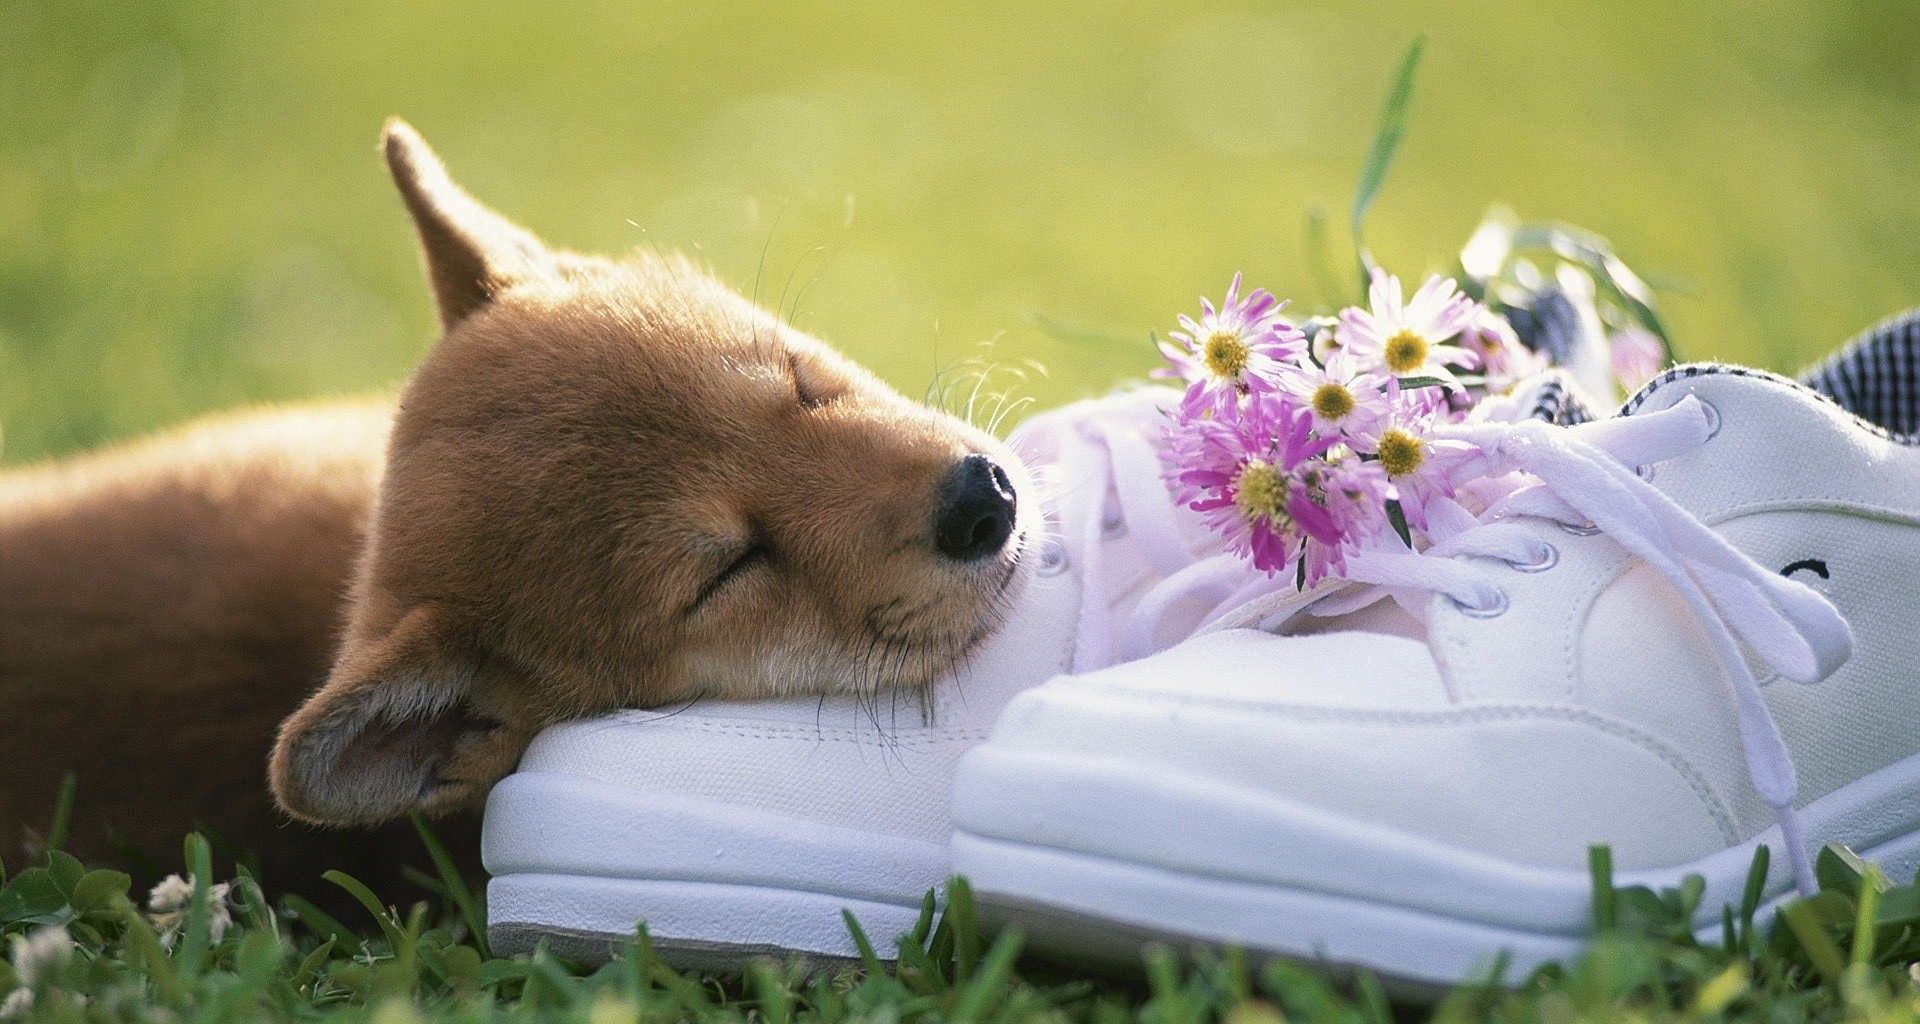 عکس hd خواب بهاری جانور کوچولو روی کفش سفید